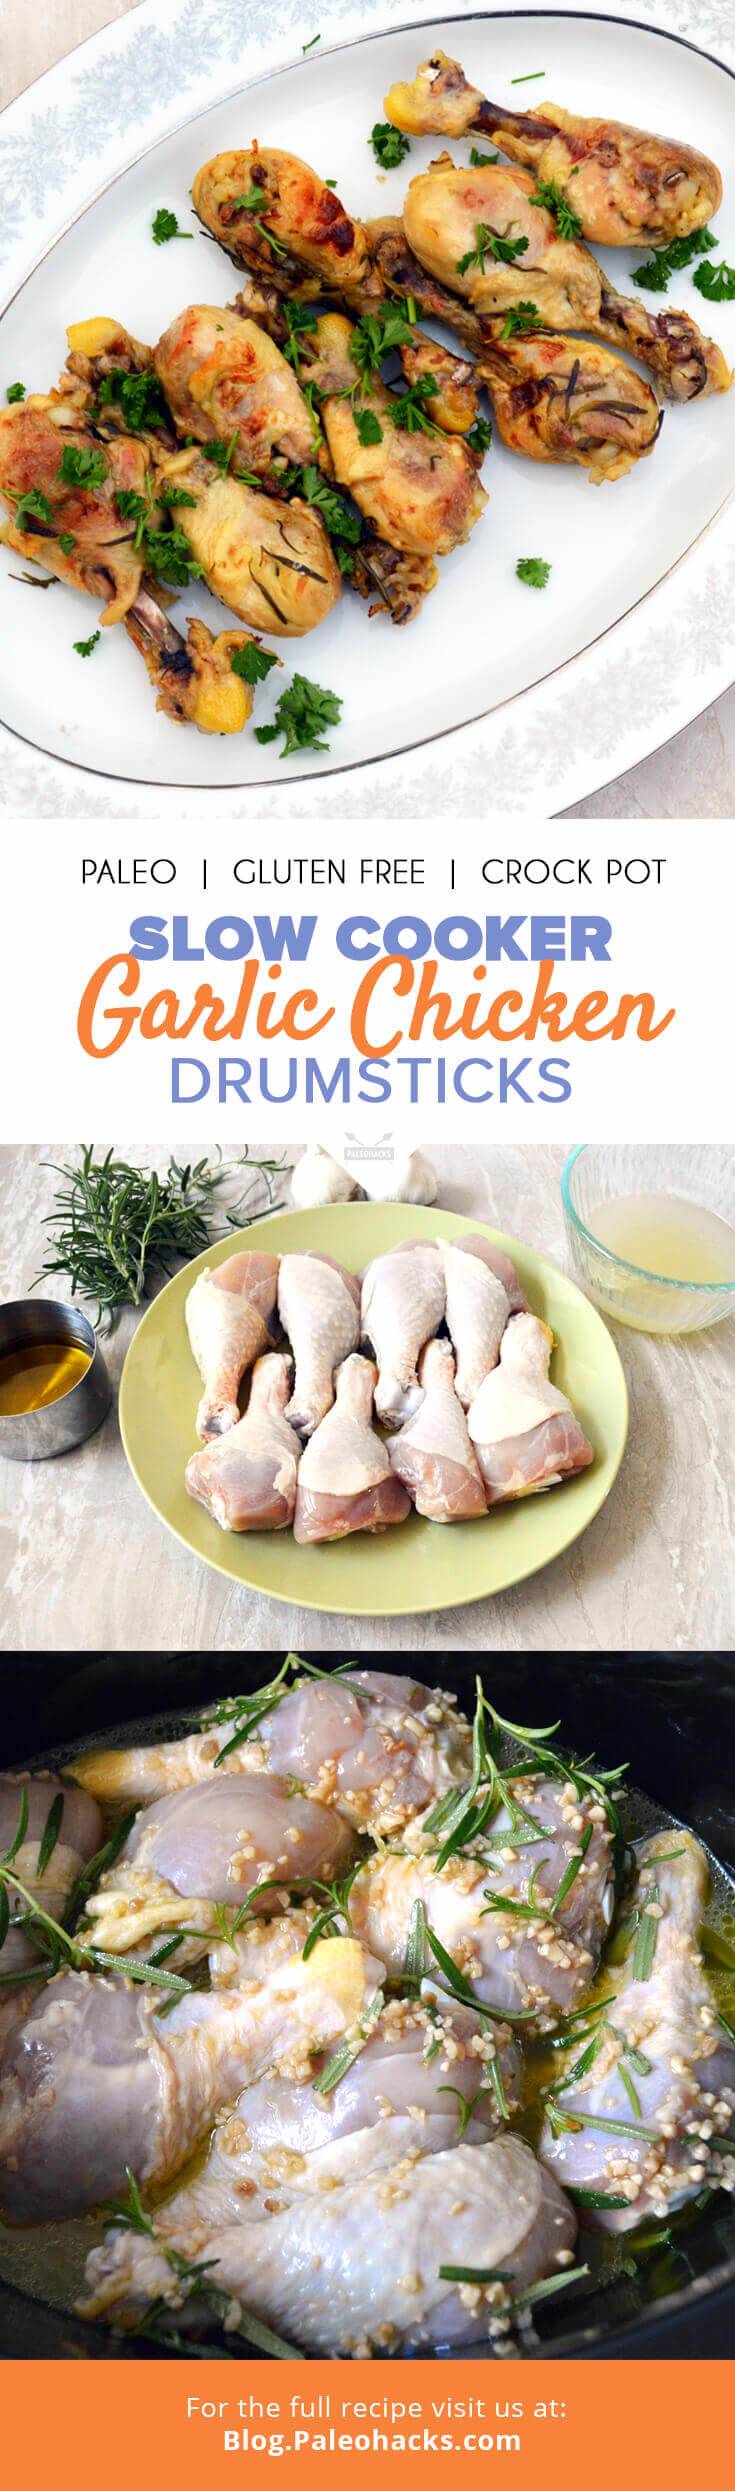 garlic chicken drumsticks pin